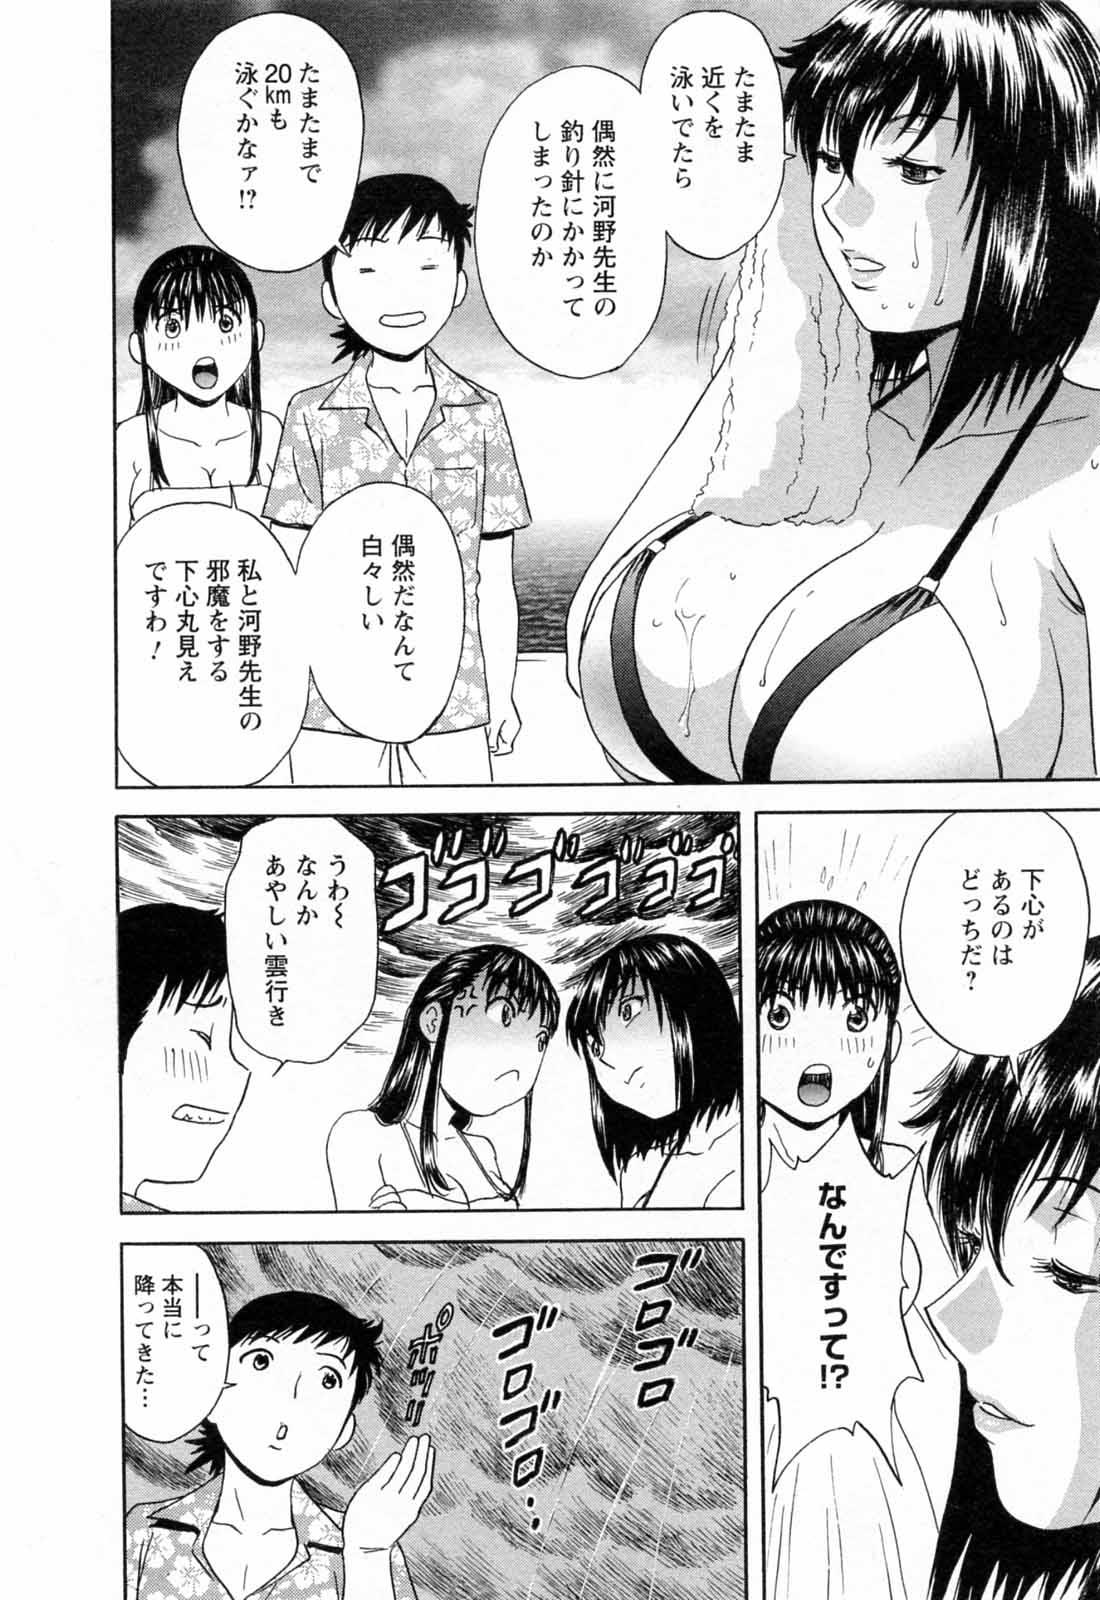 [Hidemaru] Mo-Retsu! Boin Sensei (Boing Boing Teacher) Vol.5 137